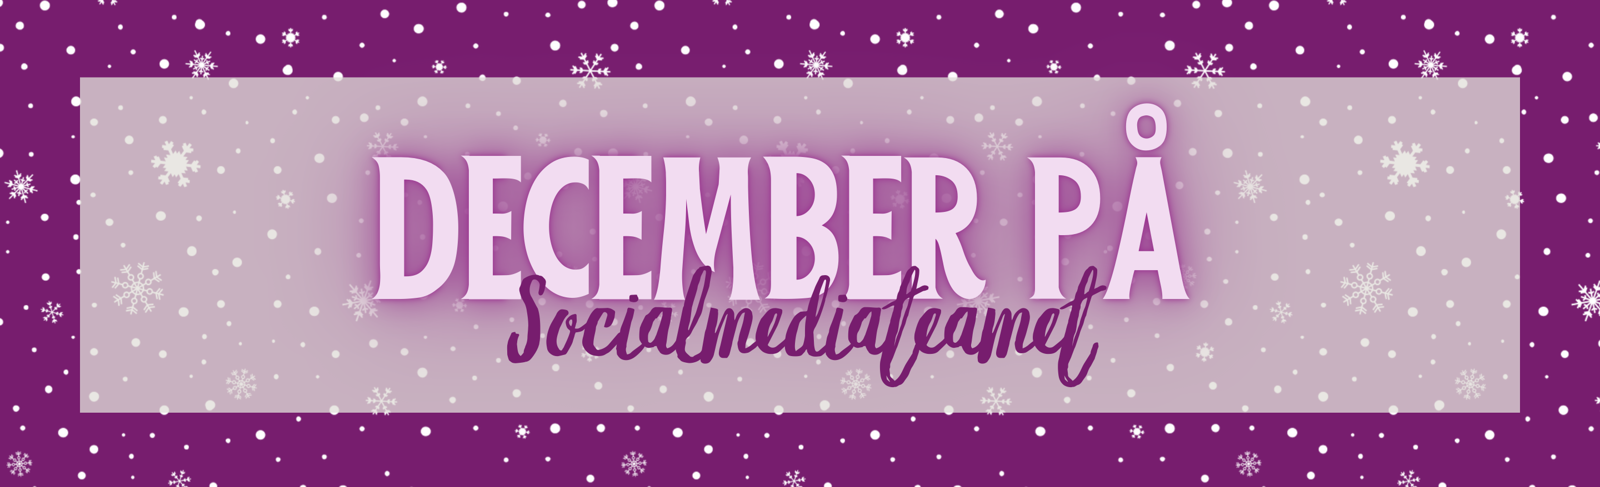 December på Socialmediateamet